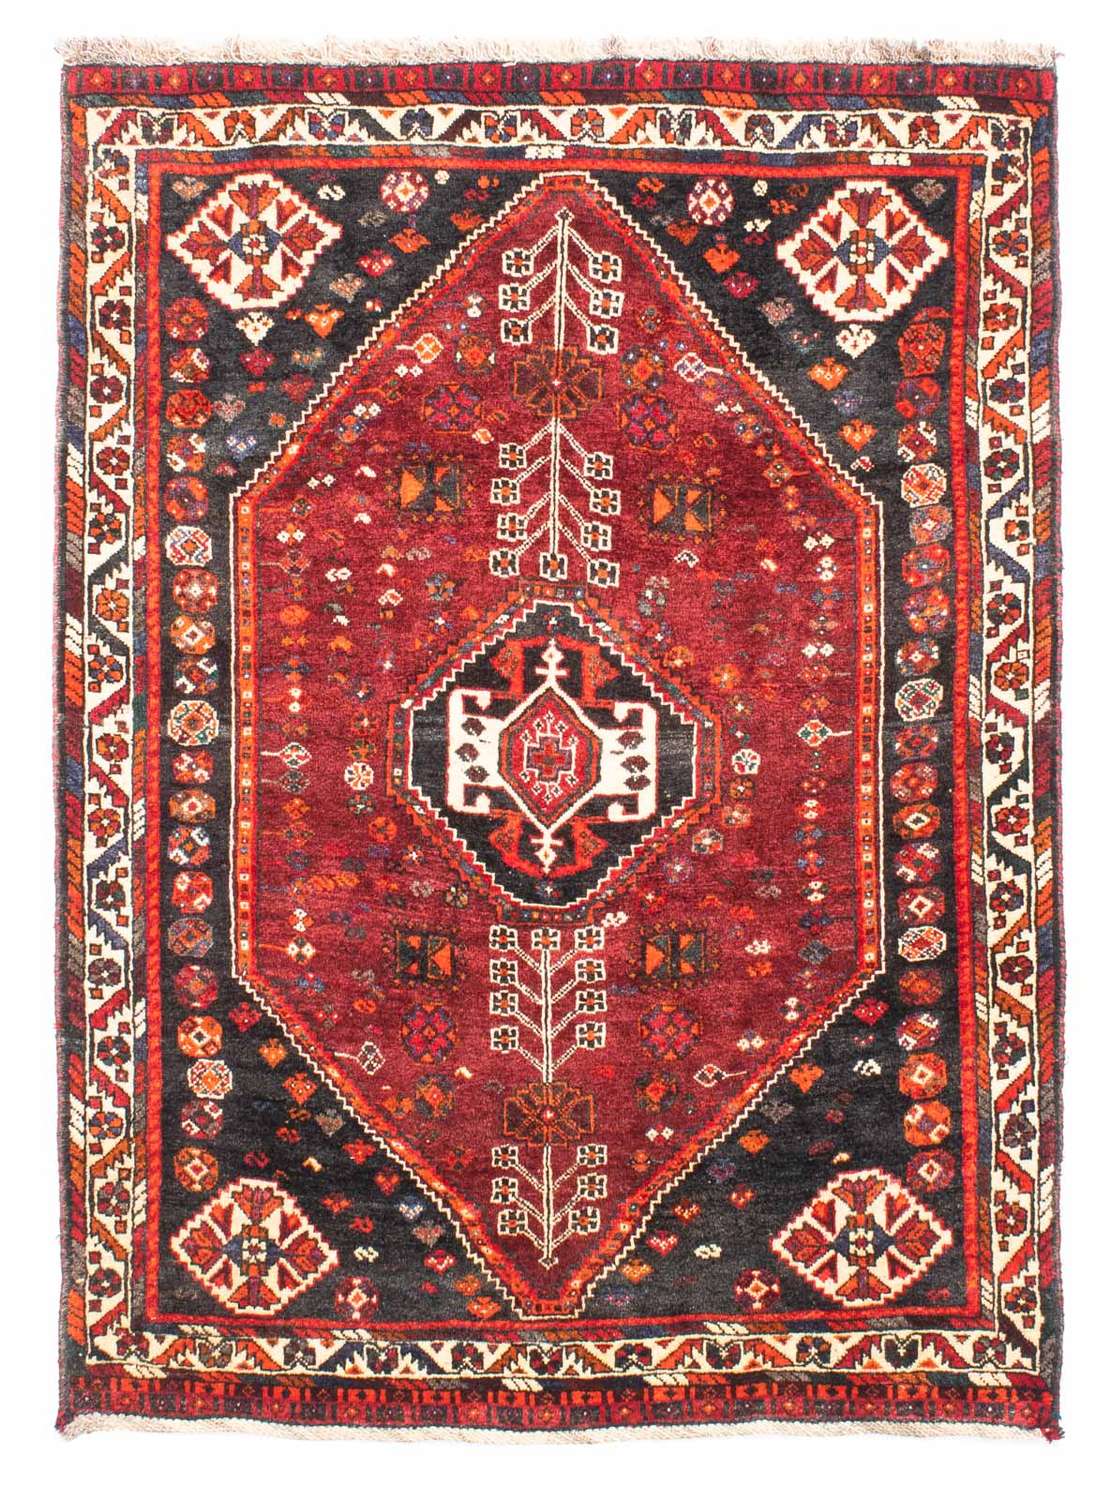 Alfombra persa - Nómada - 148 x 108 cm - rojo oscuro